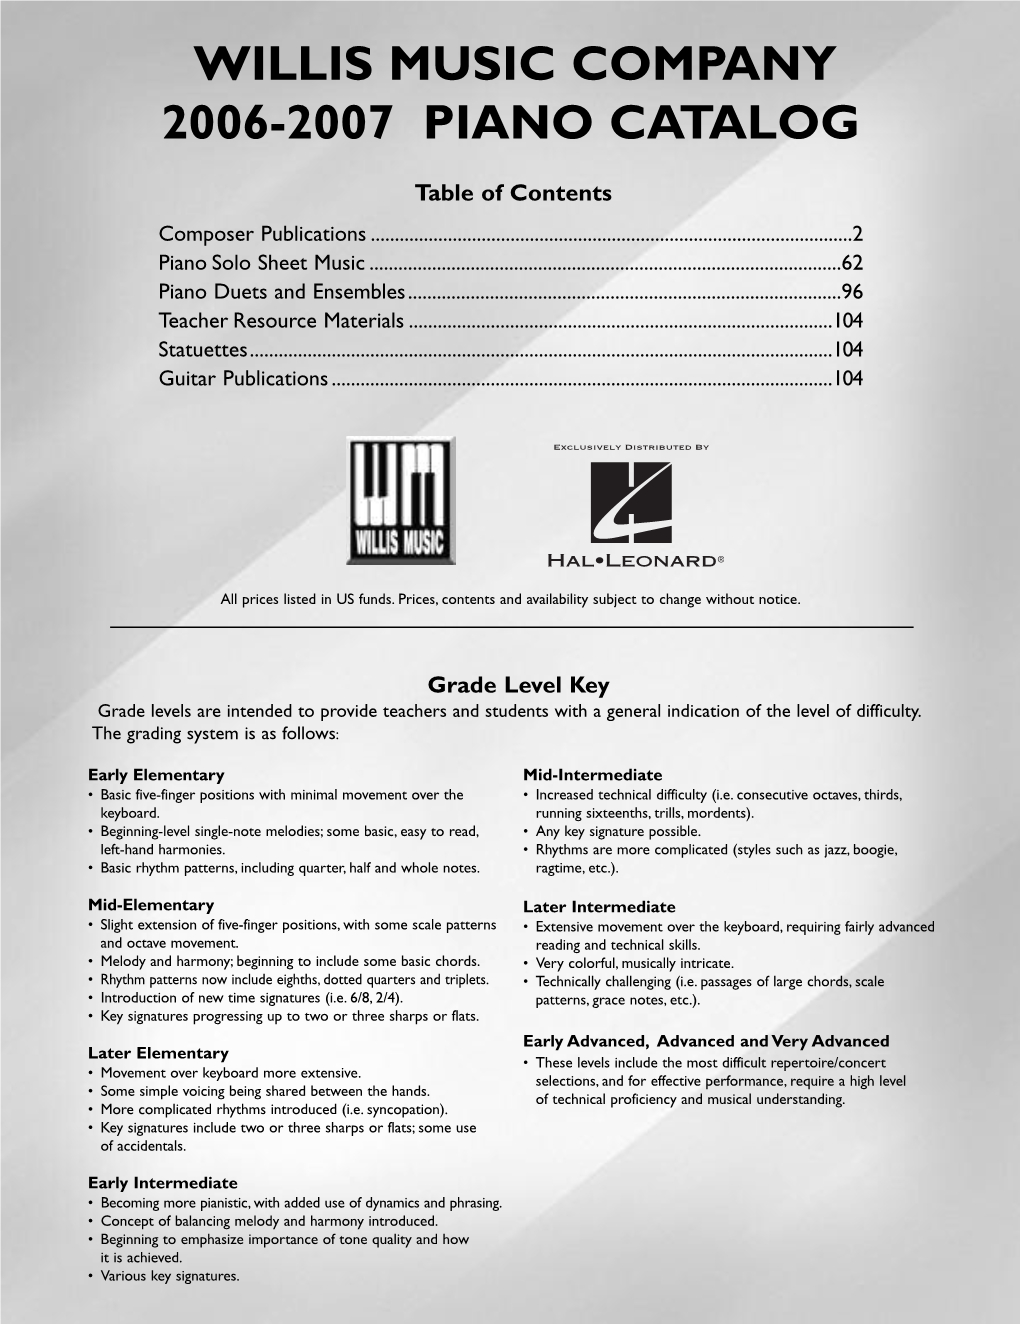 Willis Music Company 2006-2007 Piano Catalog